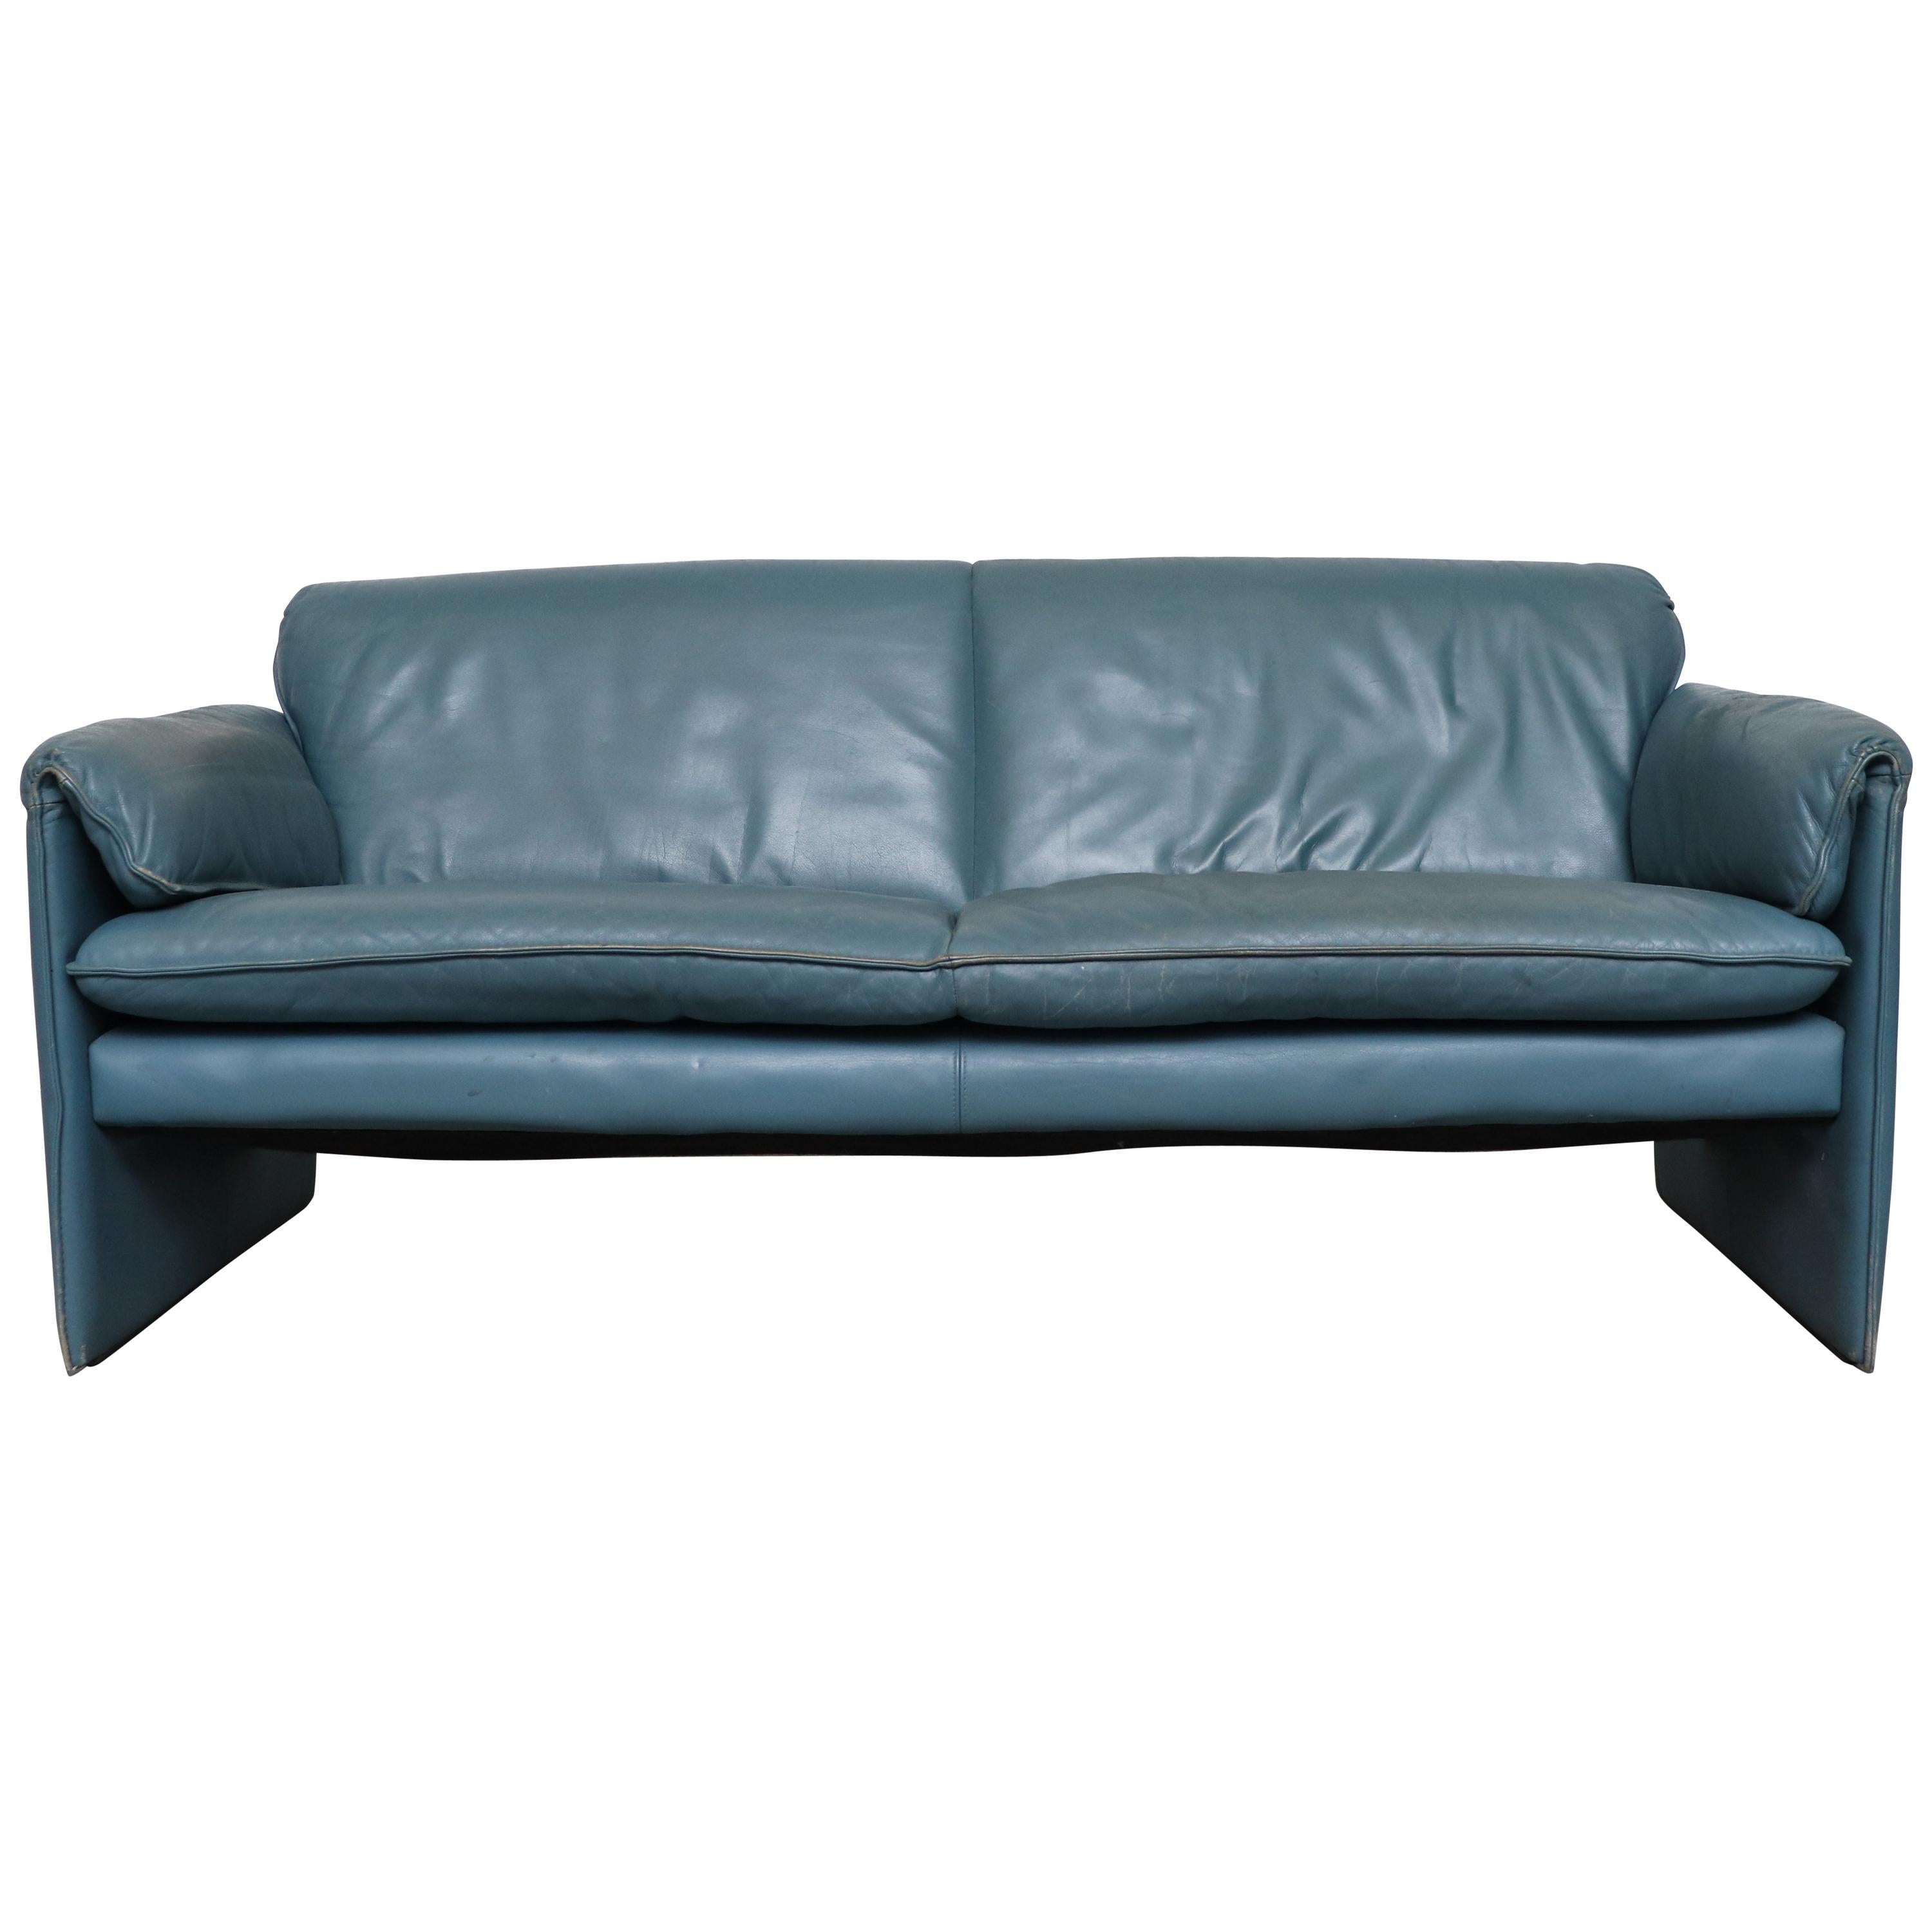 Leolux Blue Leather 'Bora Bora' Sofa